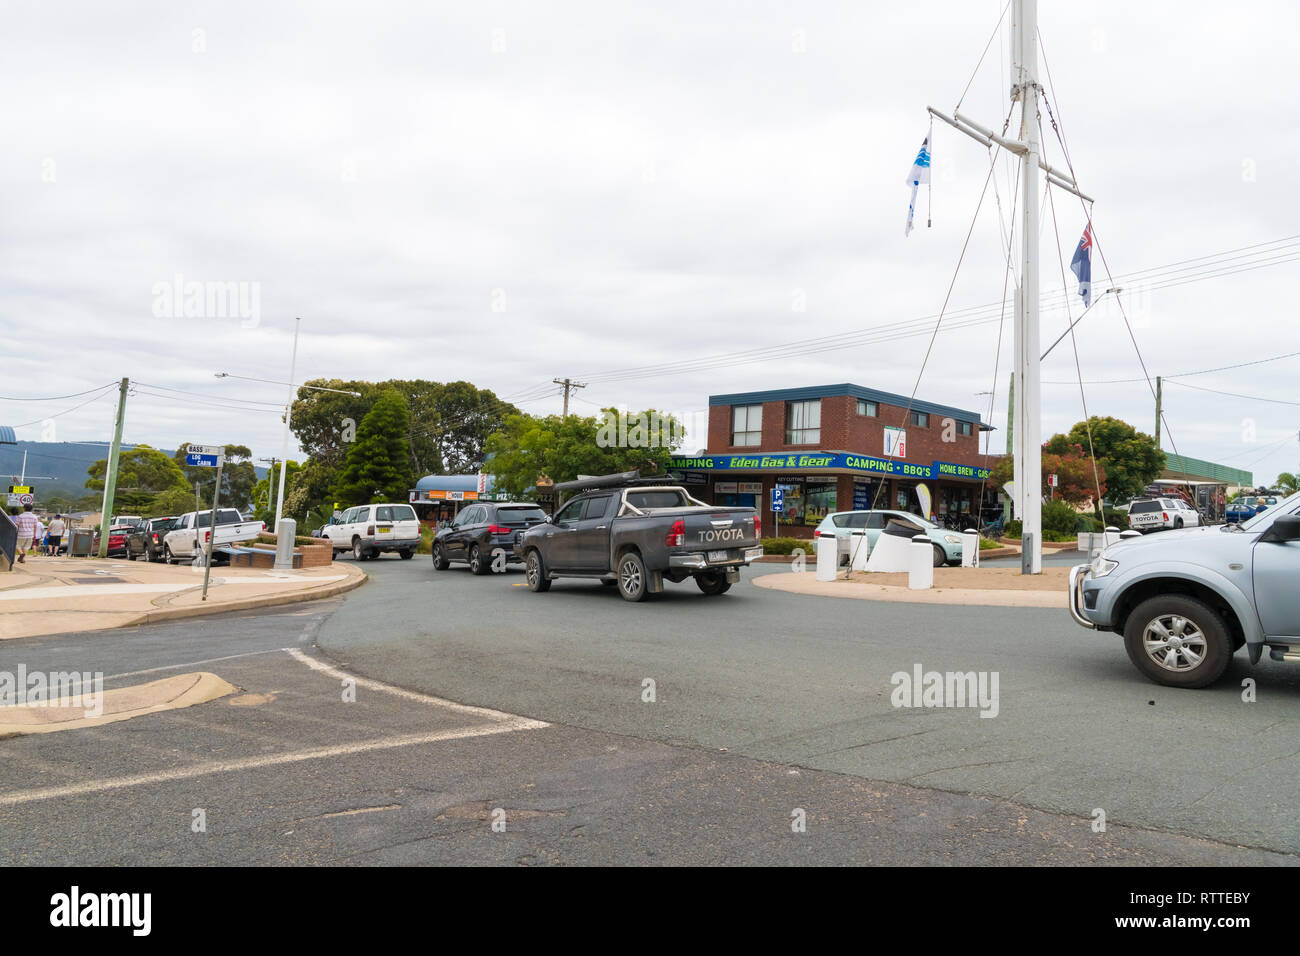 Eden, , Australia-January 2, 2019 : Street view dans la ville d'Eden, une ville côtière sur la côte sud de la Nouvelle-Galles du Sud, l'Australie, connu pour mieux observer les baleines Banque D'Images